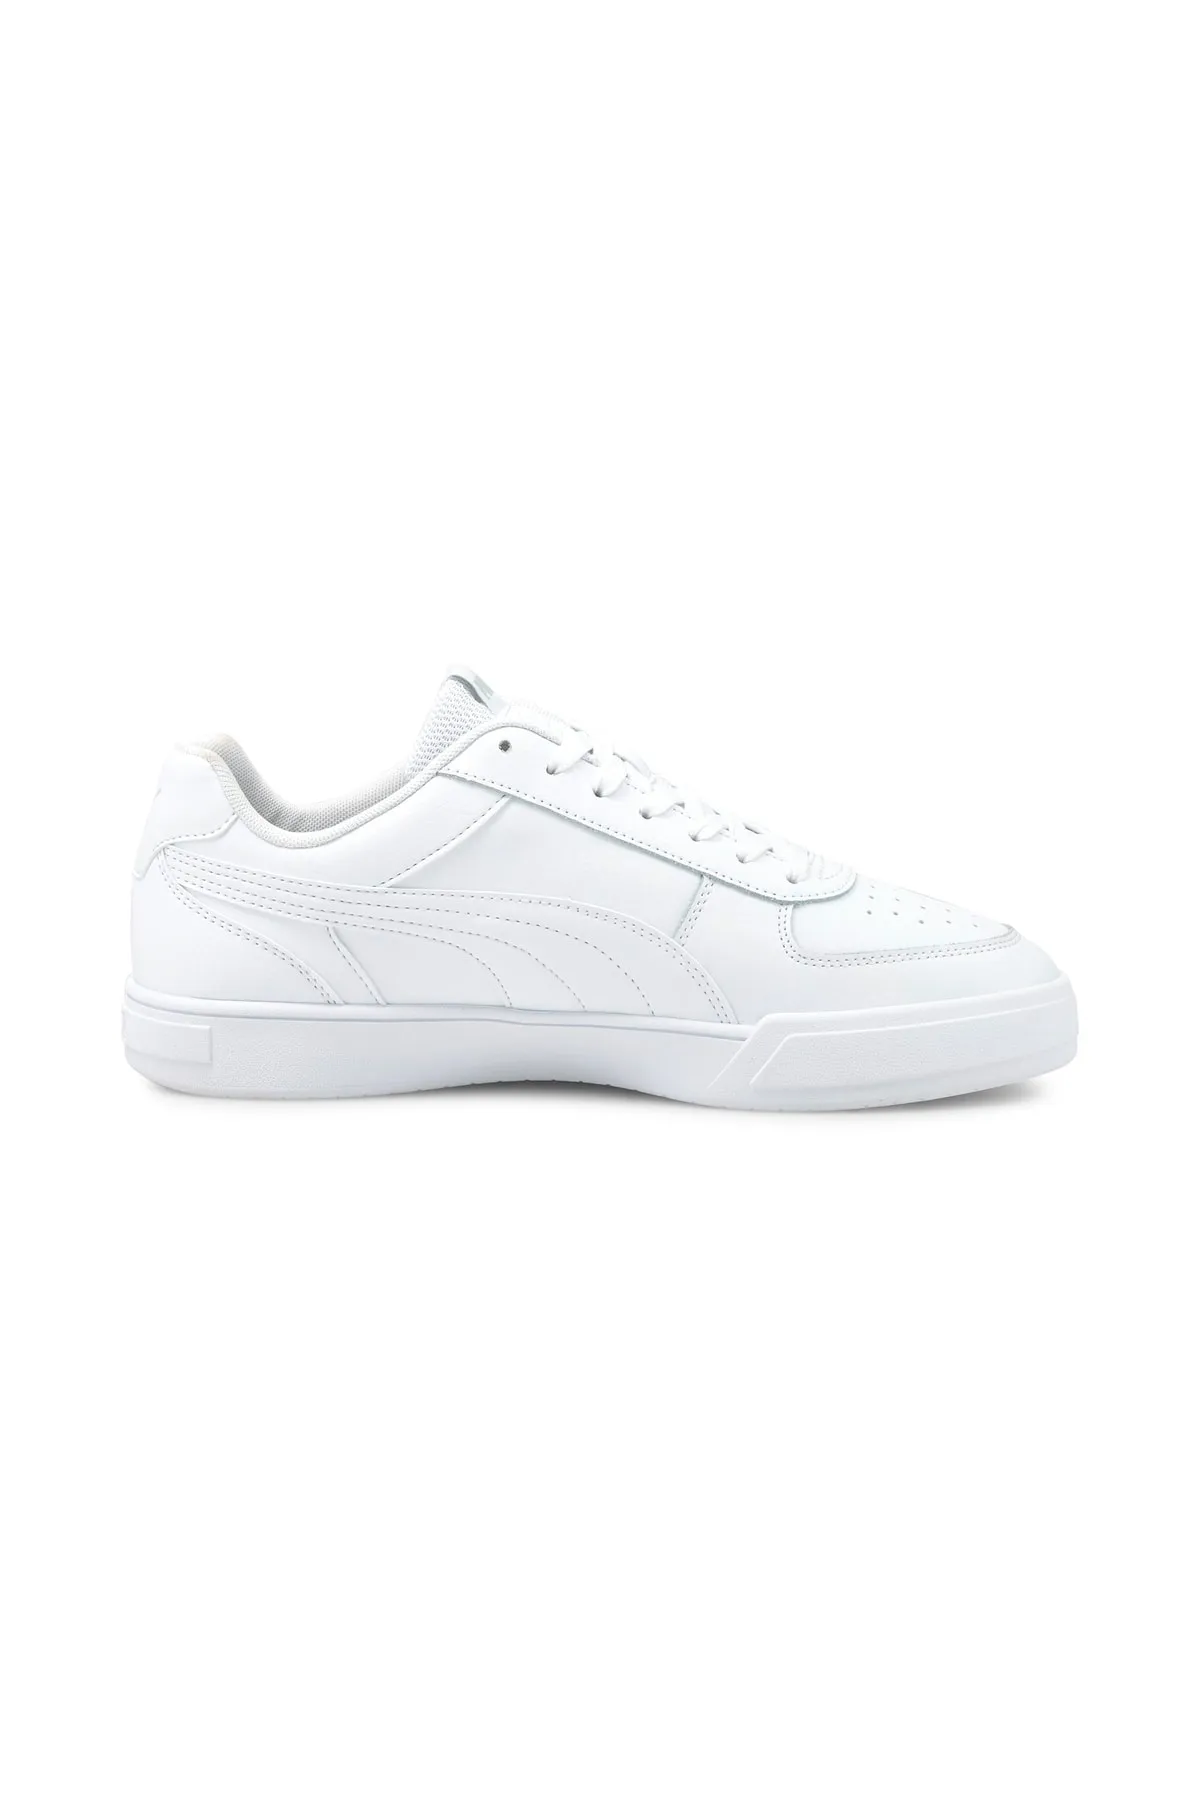 Caven Kadın Spor Ayakkabı 380810-Beyaz